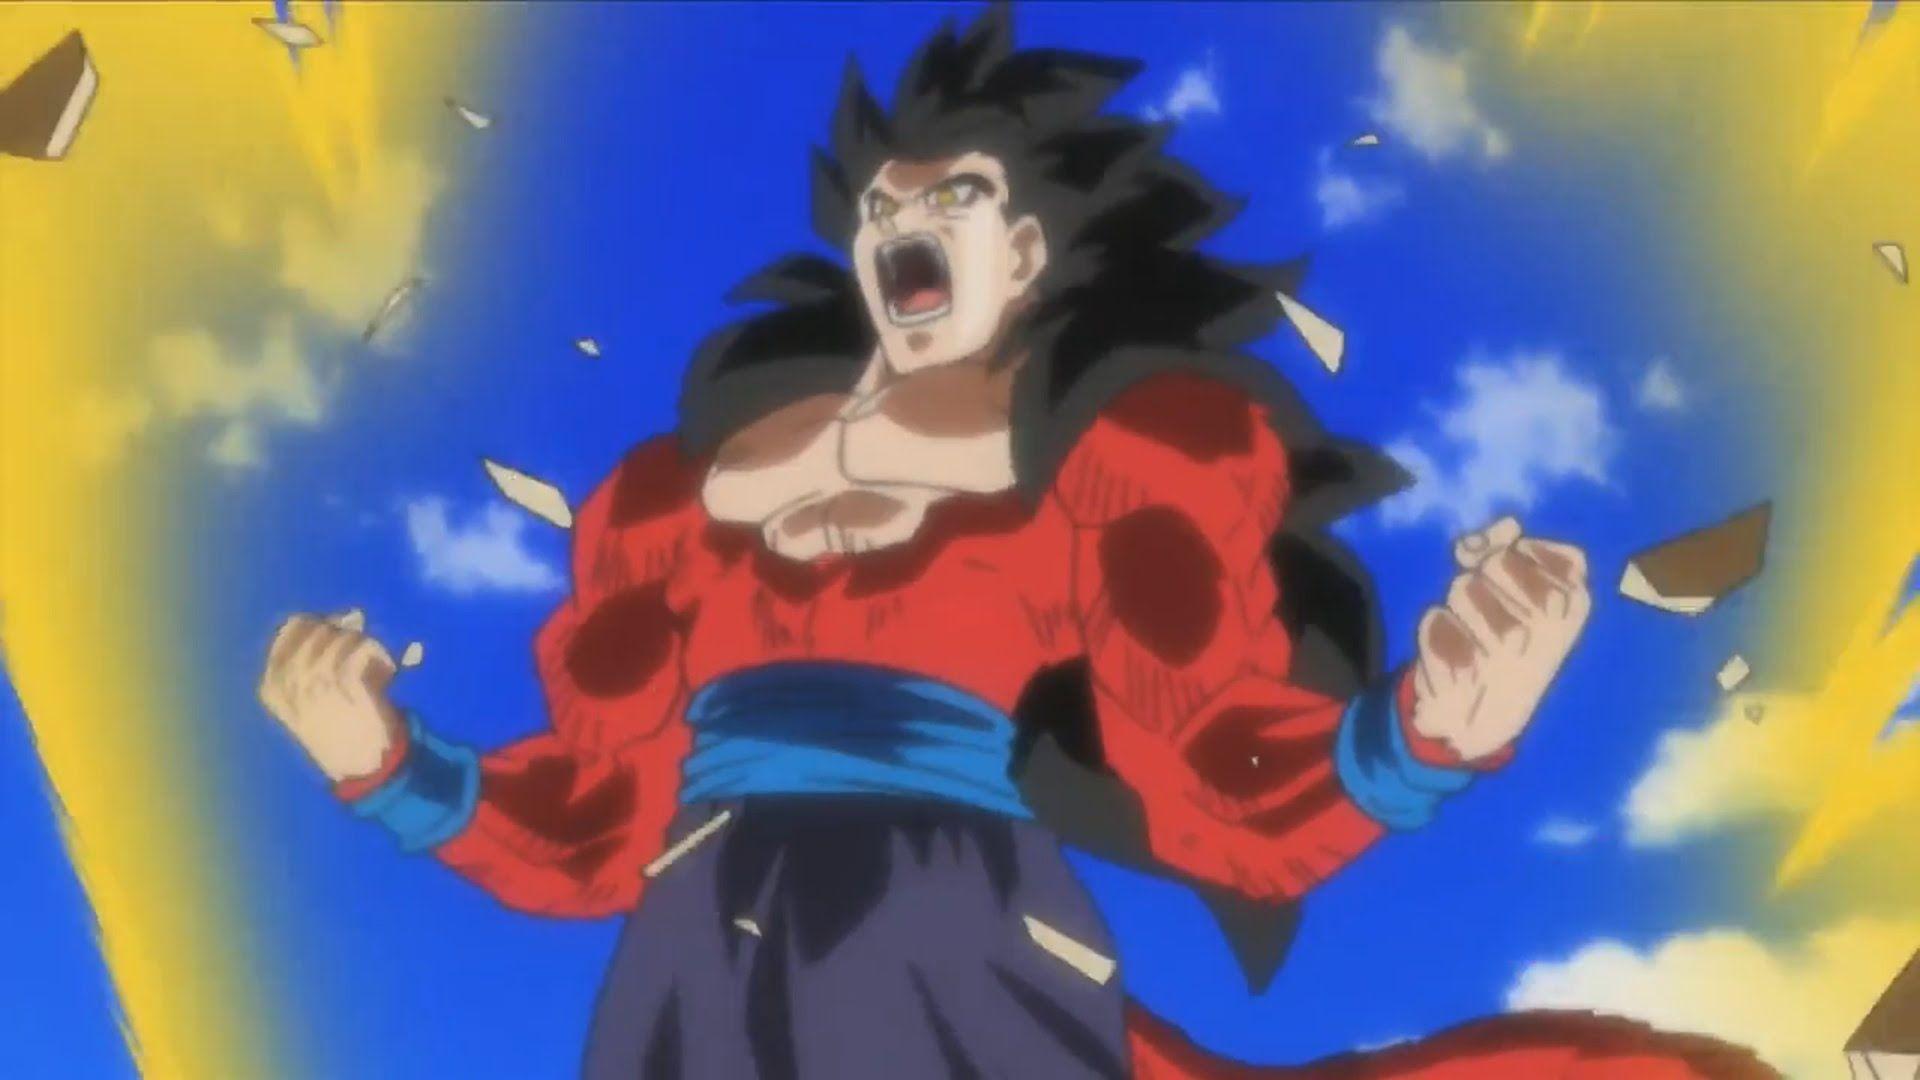 SUPER SAIYAN 4 GOHAN (SSJ4) Transformation Anime Cutscene, Super 18